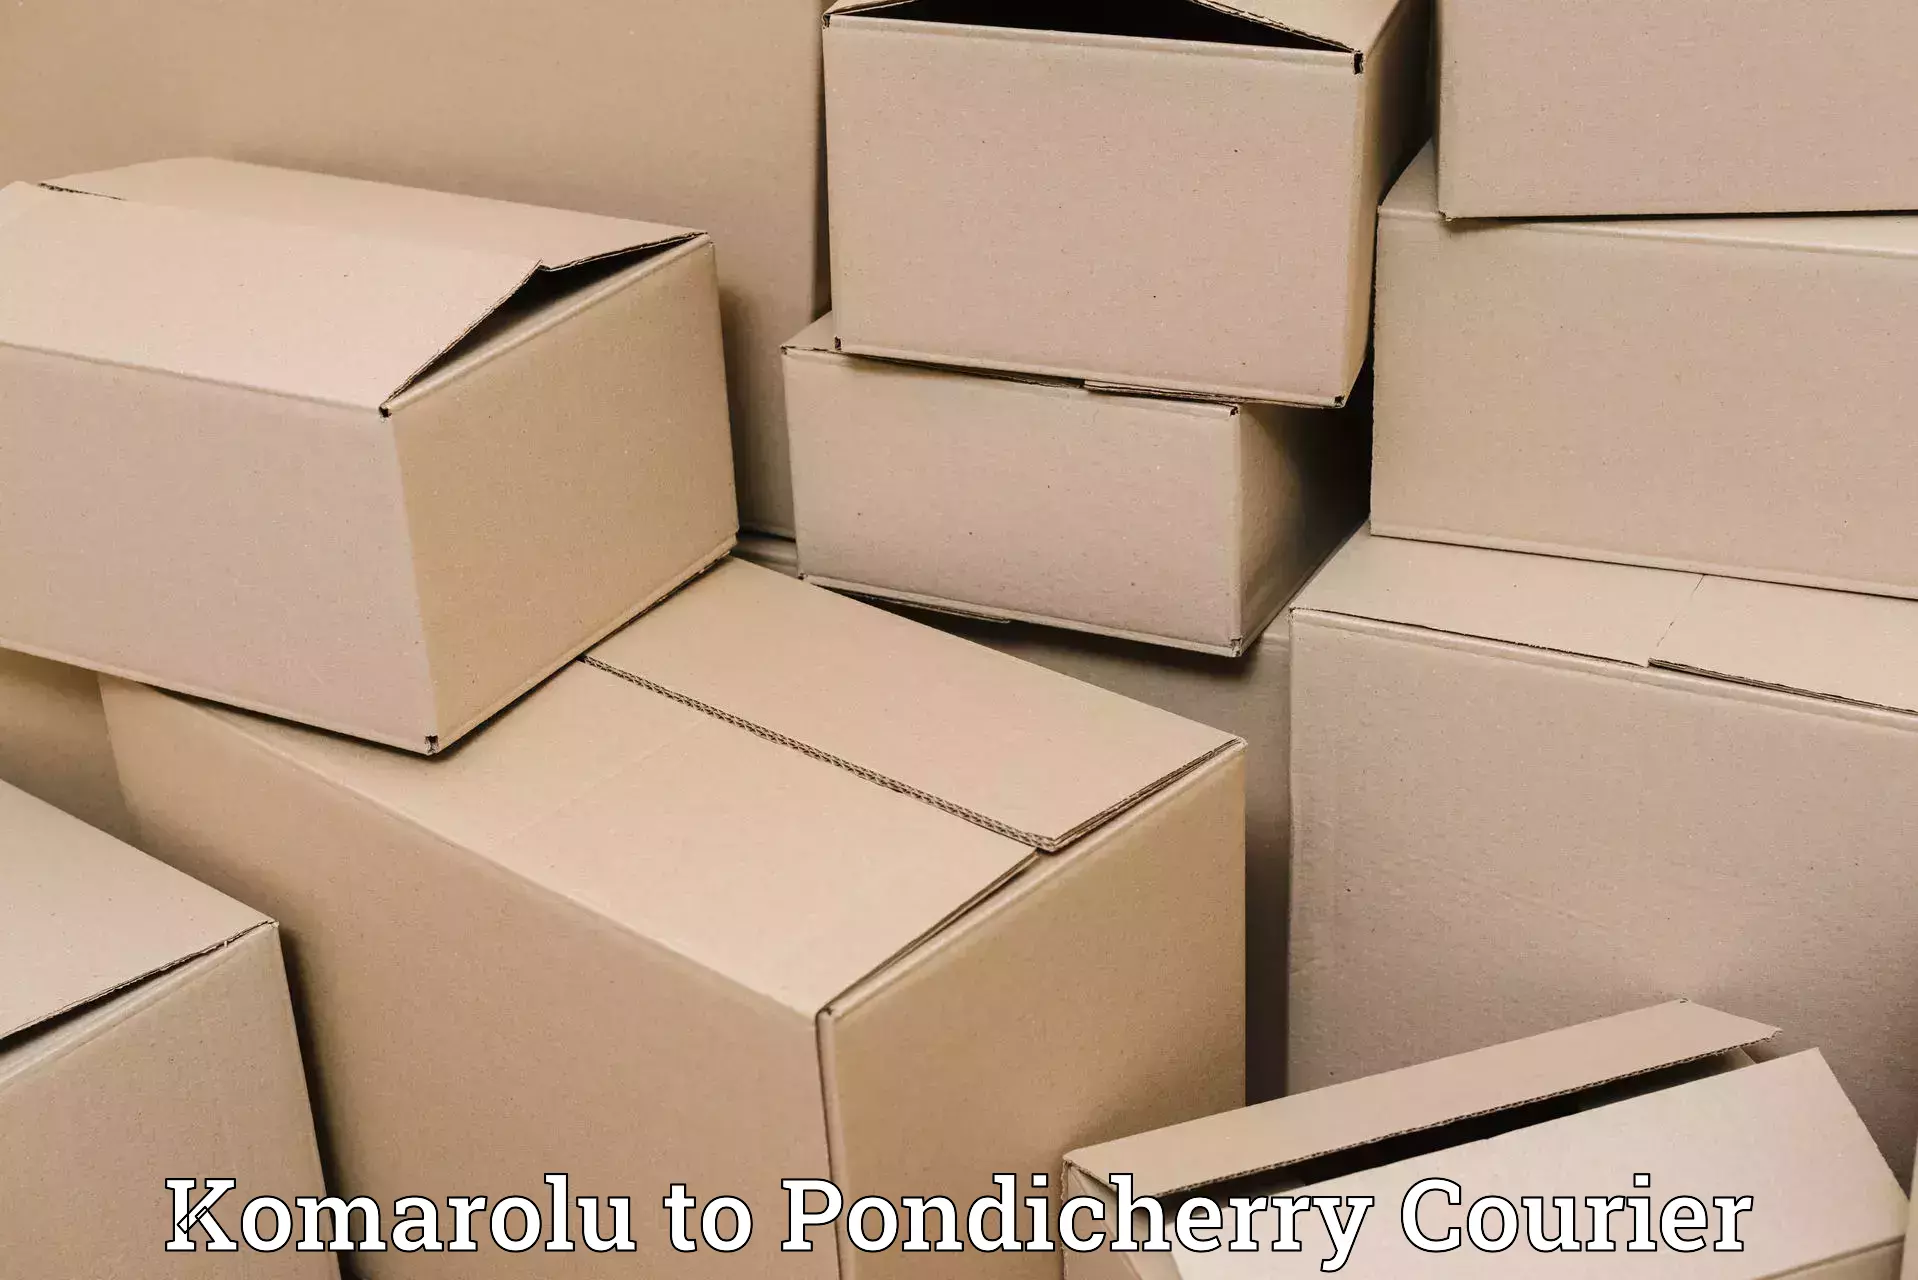 Efficient parcel service Komarolu to Pondicherry